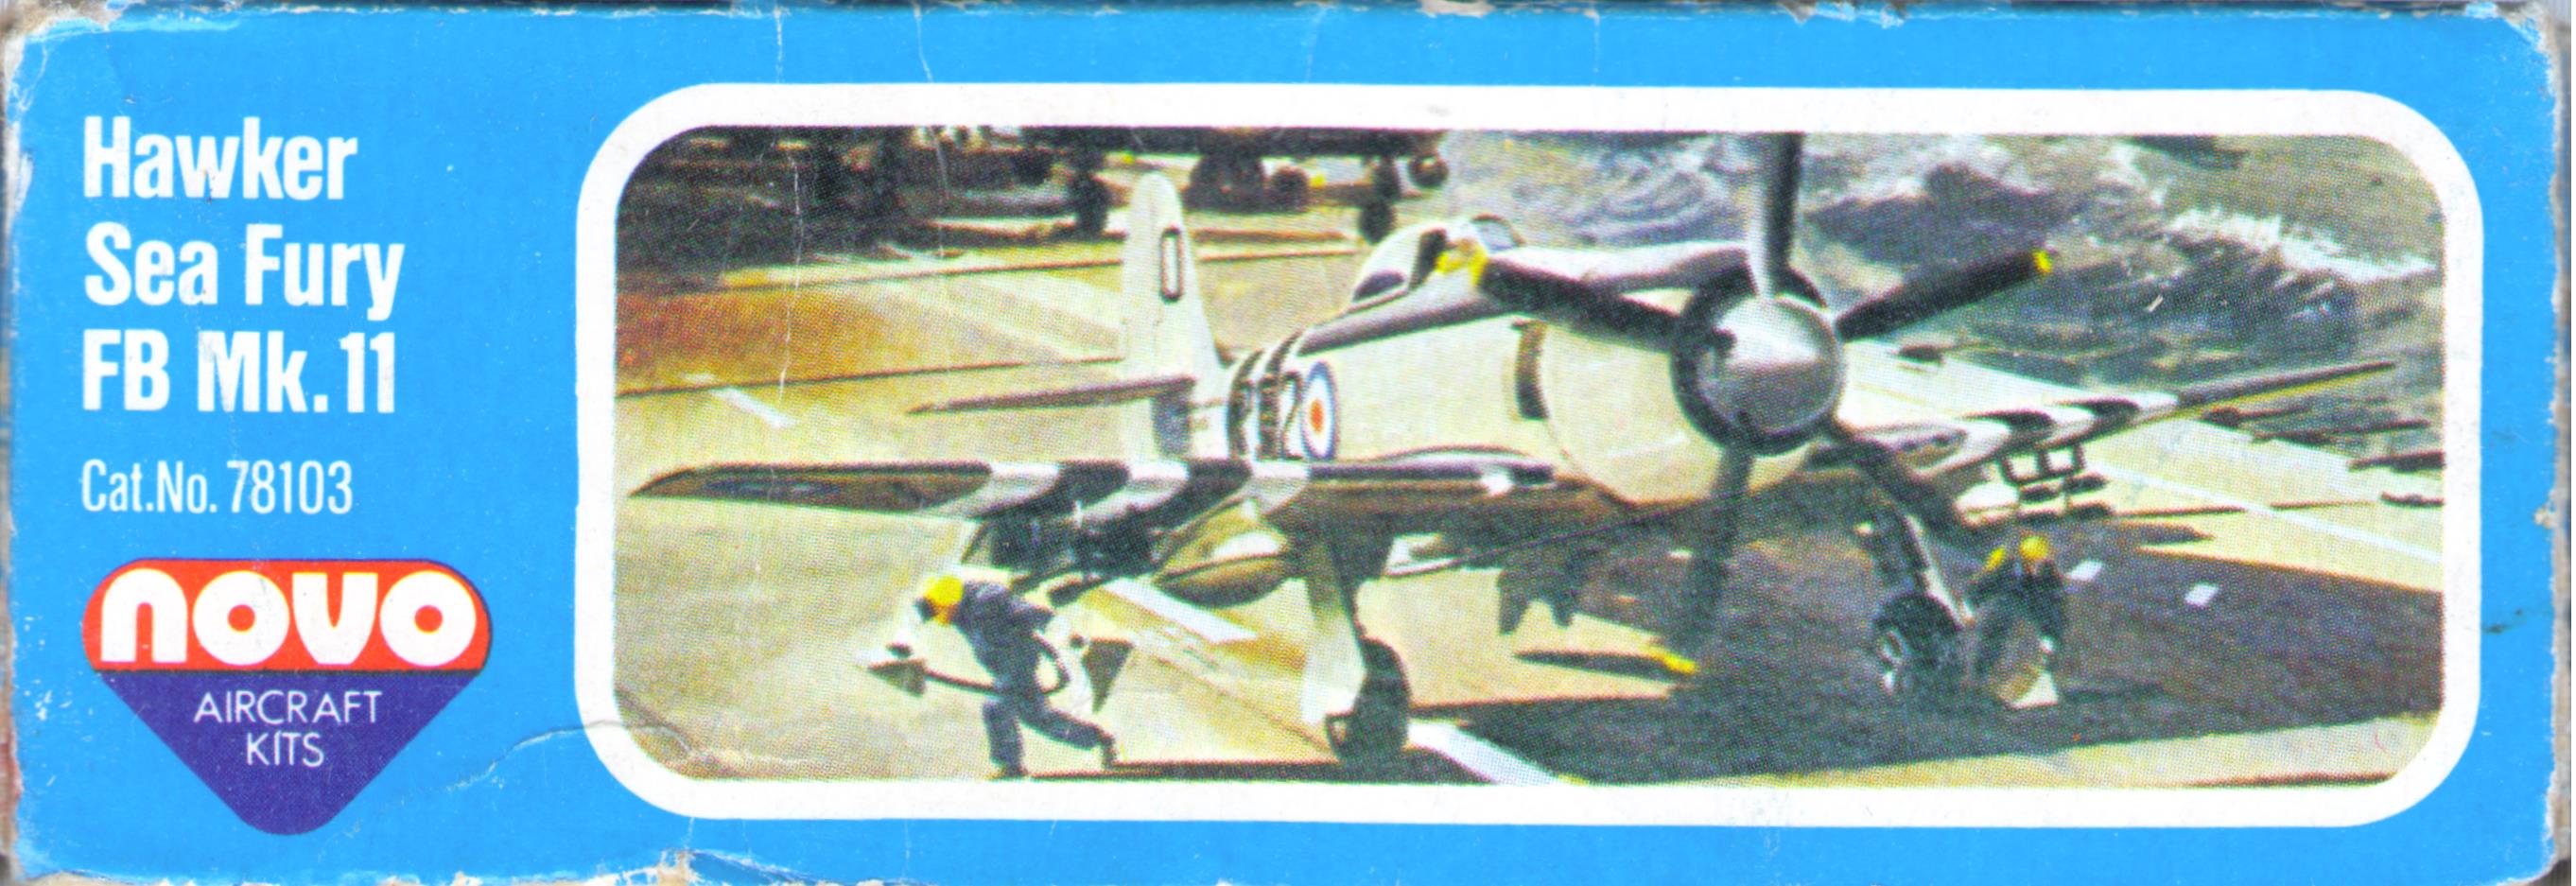 Малая сторона коробки (тестовый выпуск) NOVO Toys Ltd F197 Curtiss P-40 Tomahawk